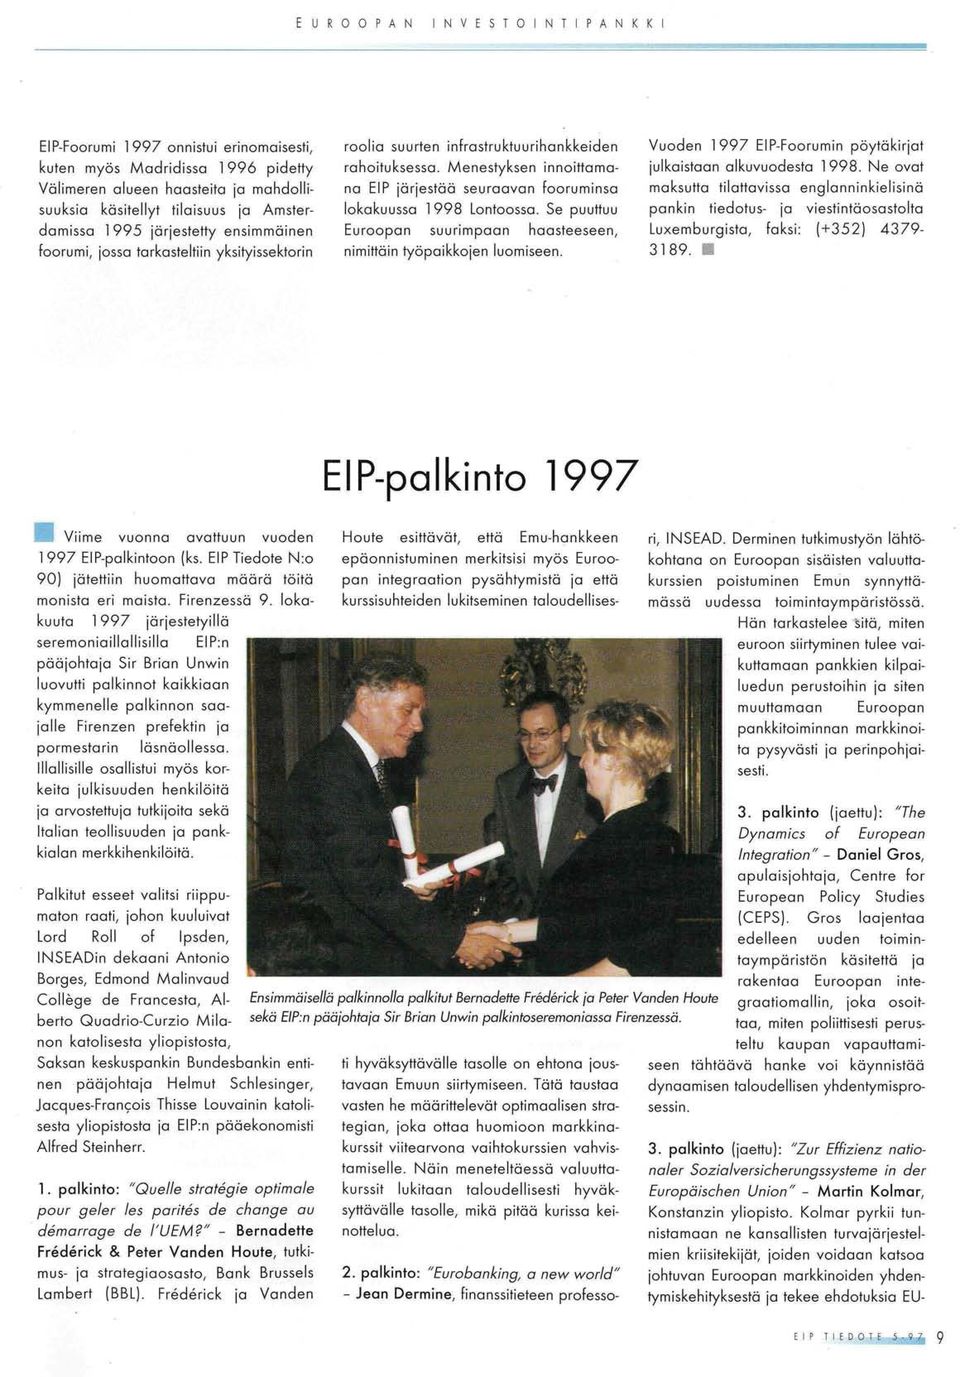 foorumi, jossa torkasteltiin yksityissektorin roolia suurten infrastruktuurihankkeiden rahoituksessa. Menestyksen innoittomono ElP jörjestöä seuraavan fooruminso lokakuusso 1998 Lontoossa.